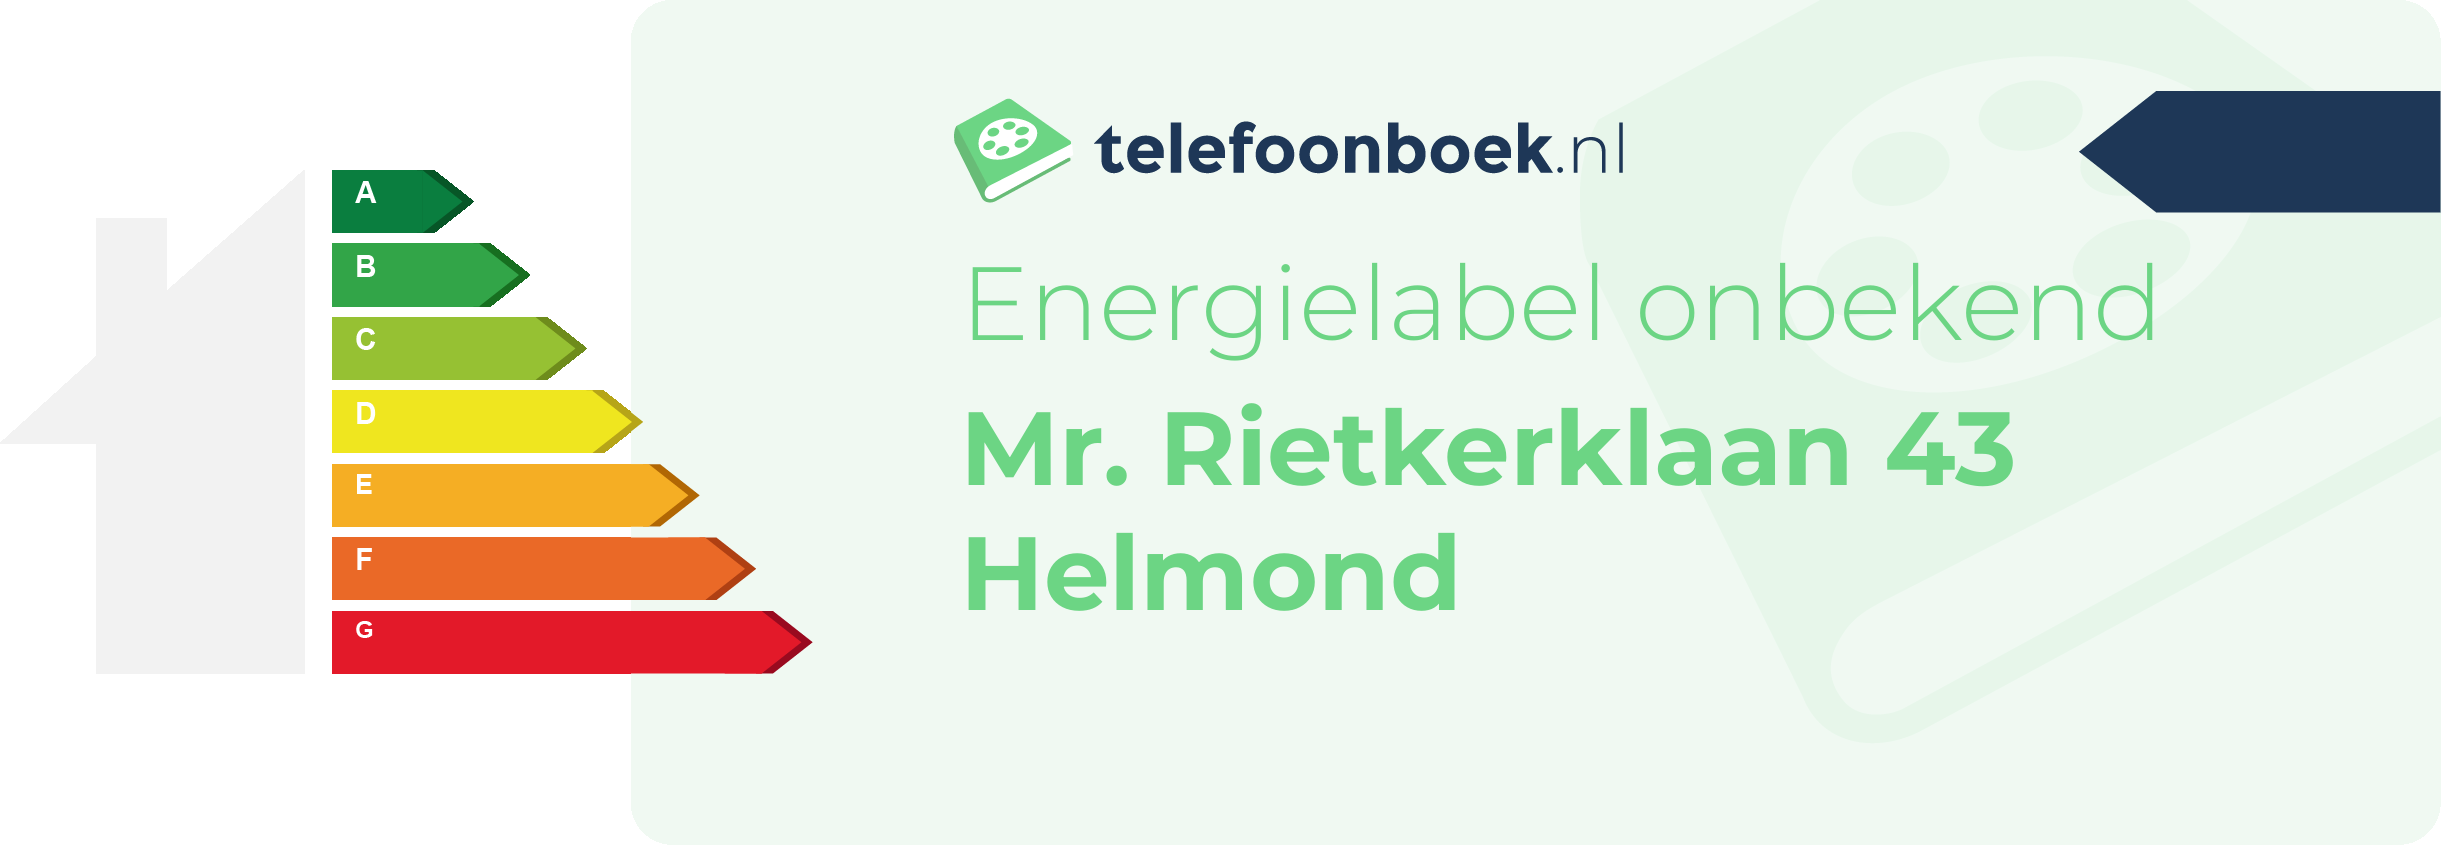 Energielabel Mr. Rietkerklaan 43 Helmond